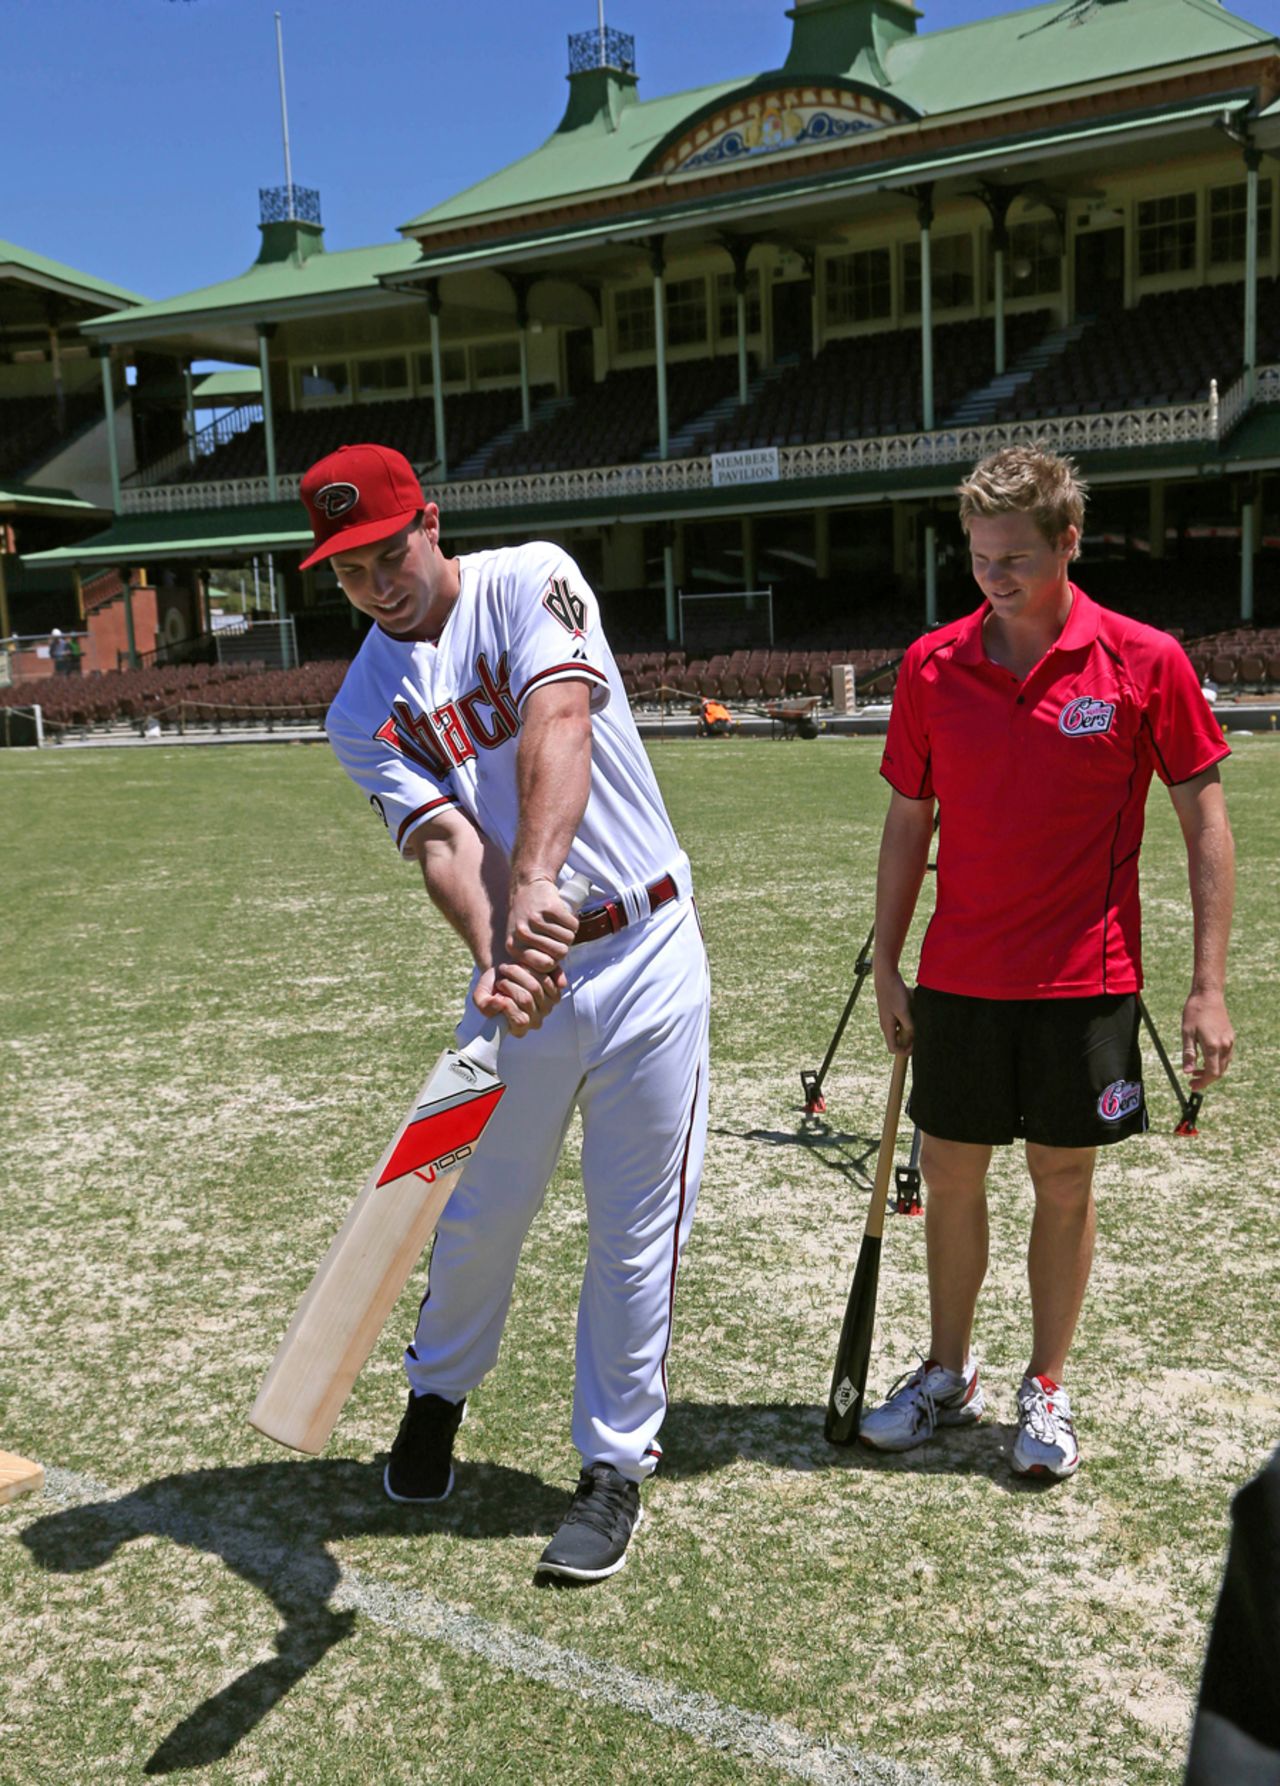 Steve Smith gives Major League Baseball player Paul Goldschmidt batting tips, Sydney, November 4, 2013